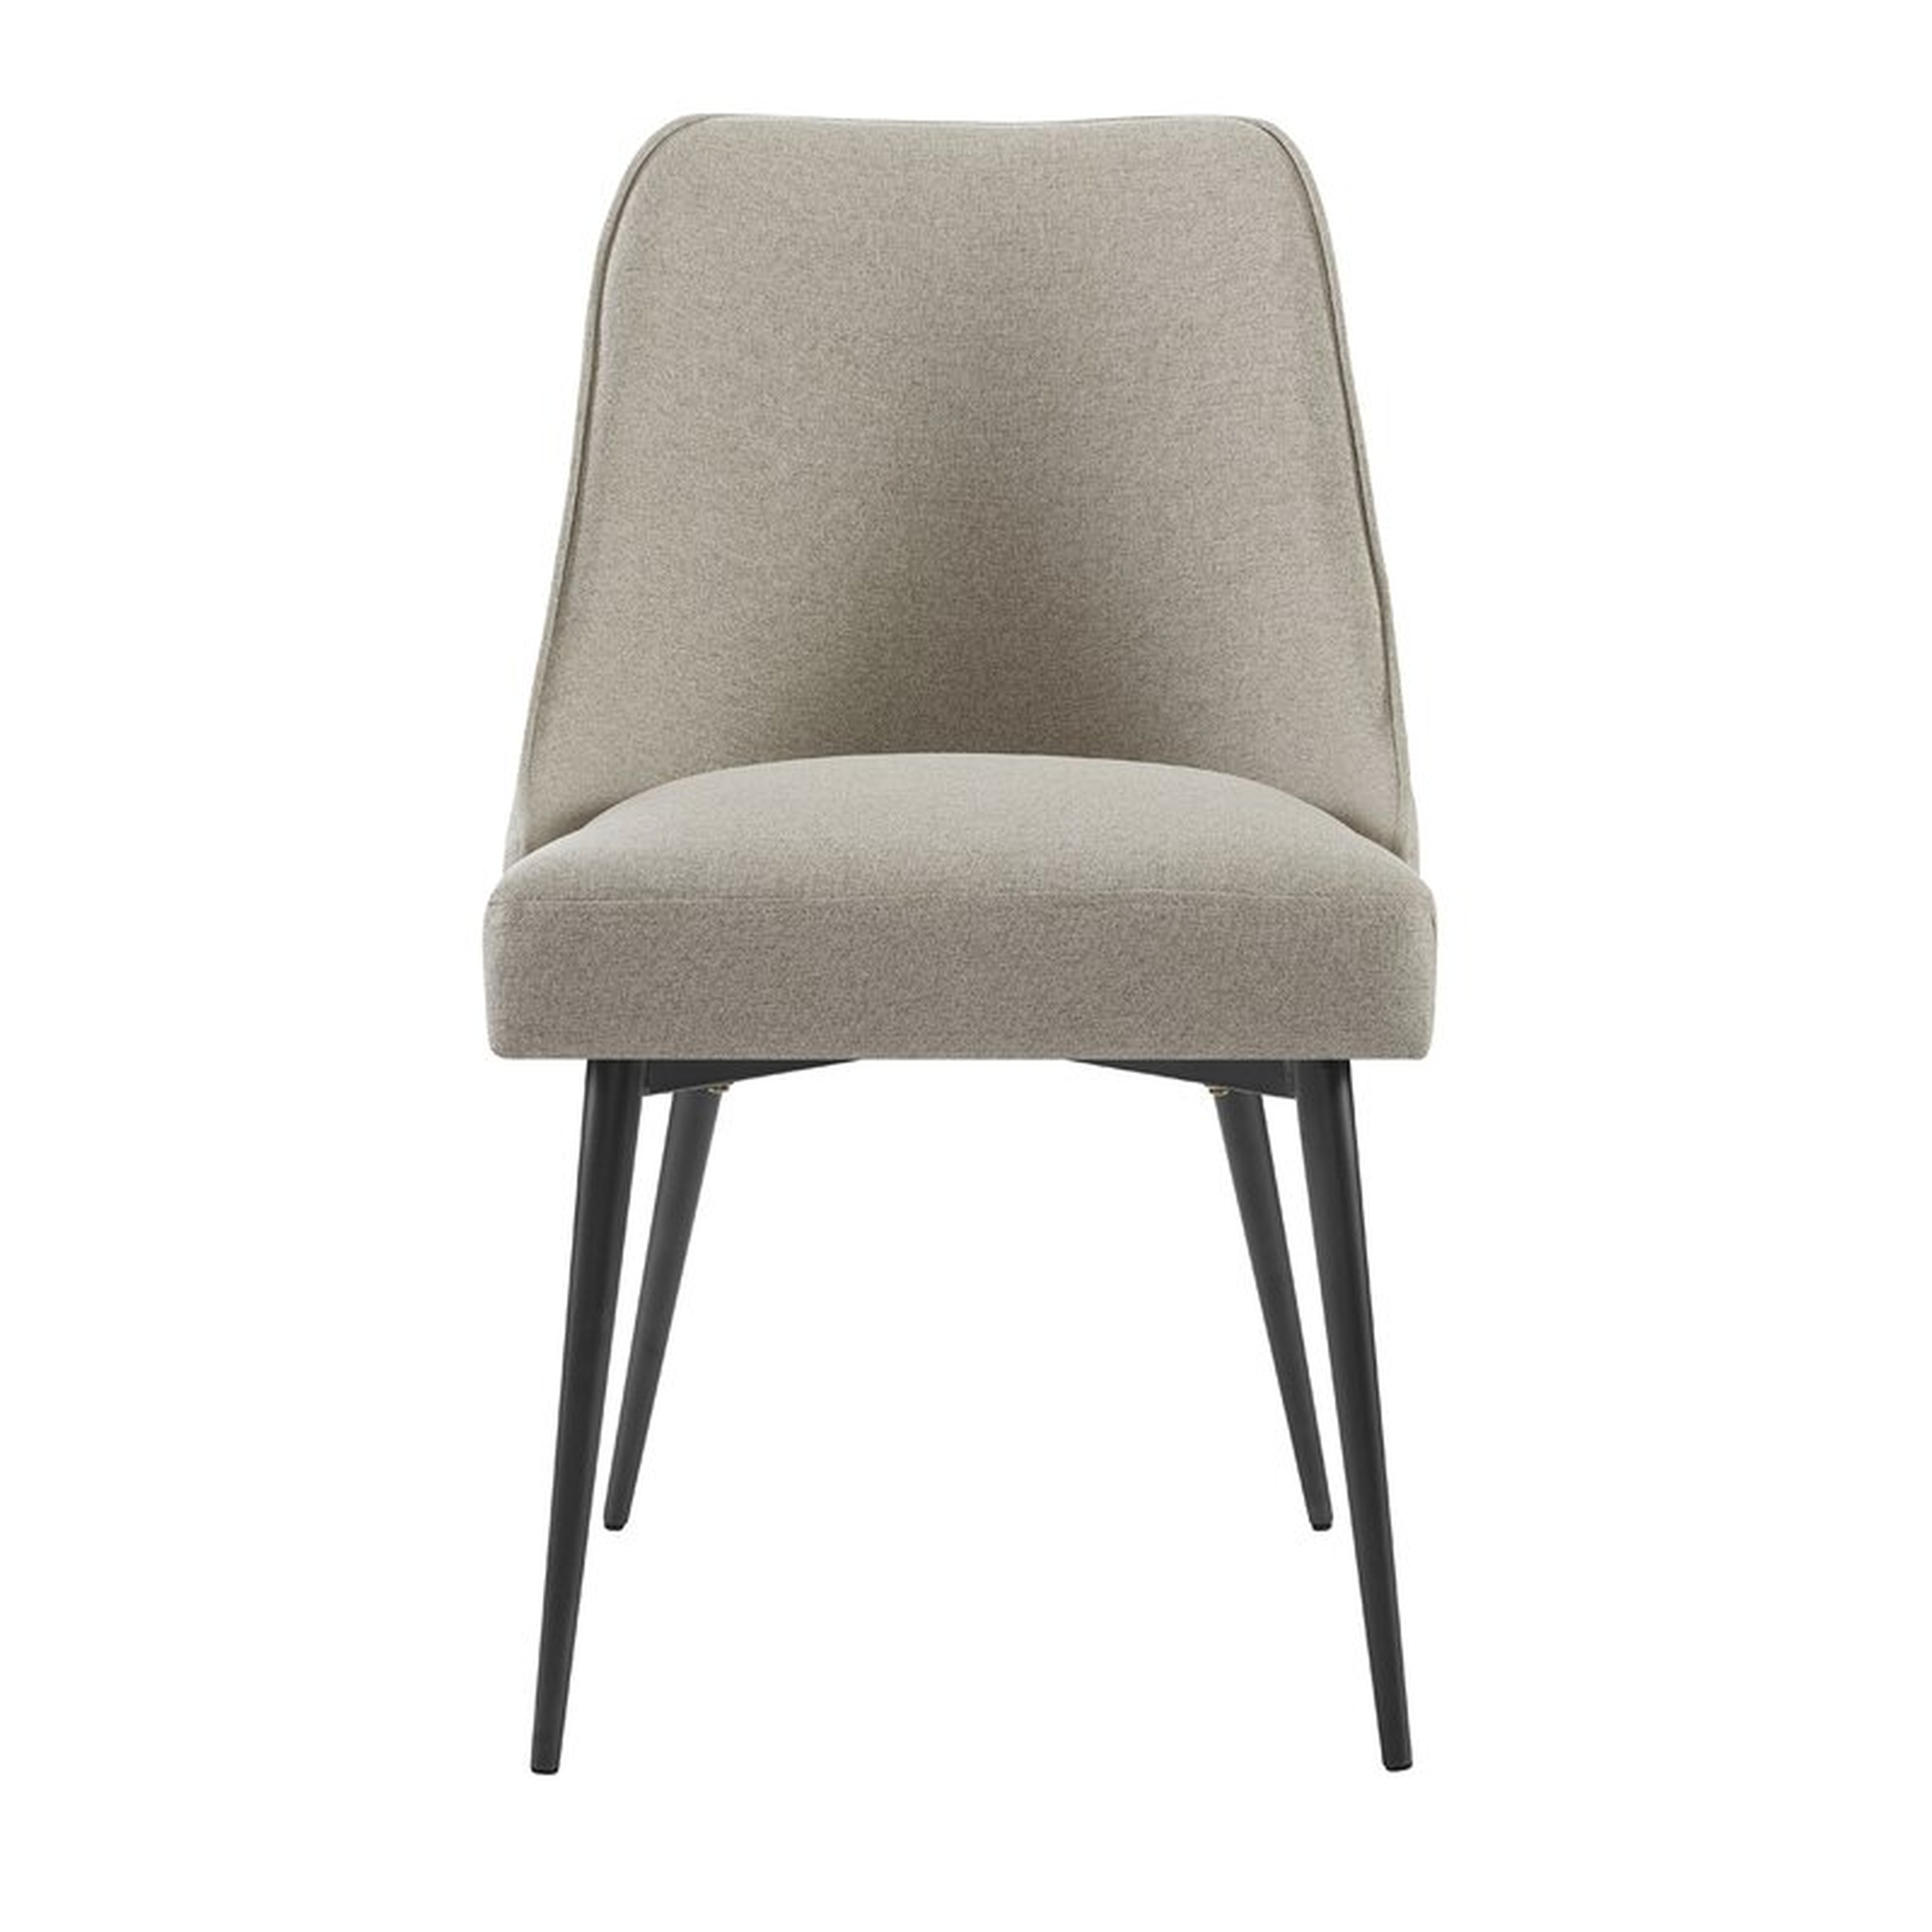 Nivens Upholstered Side Chair in Khaki (Set of 2) - Wayfair